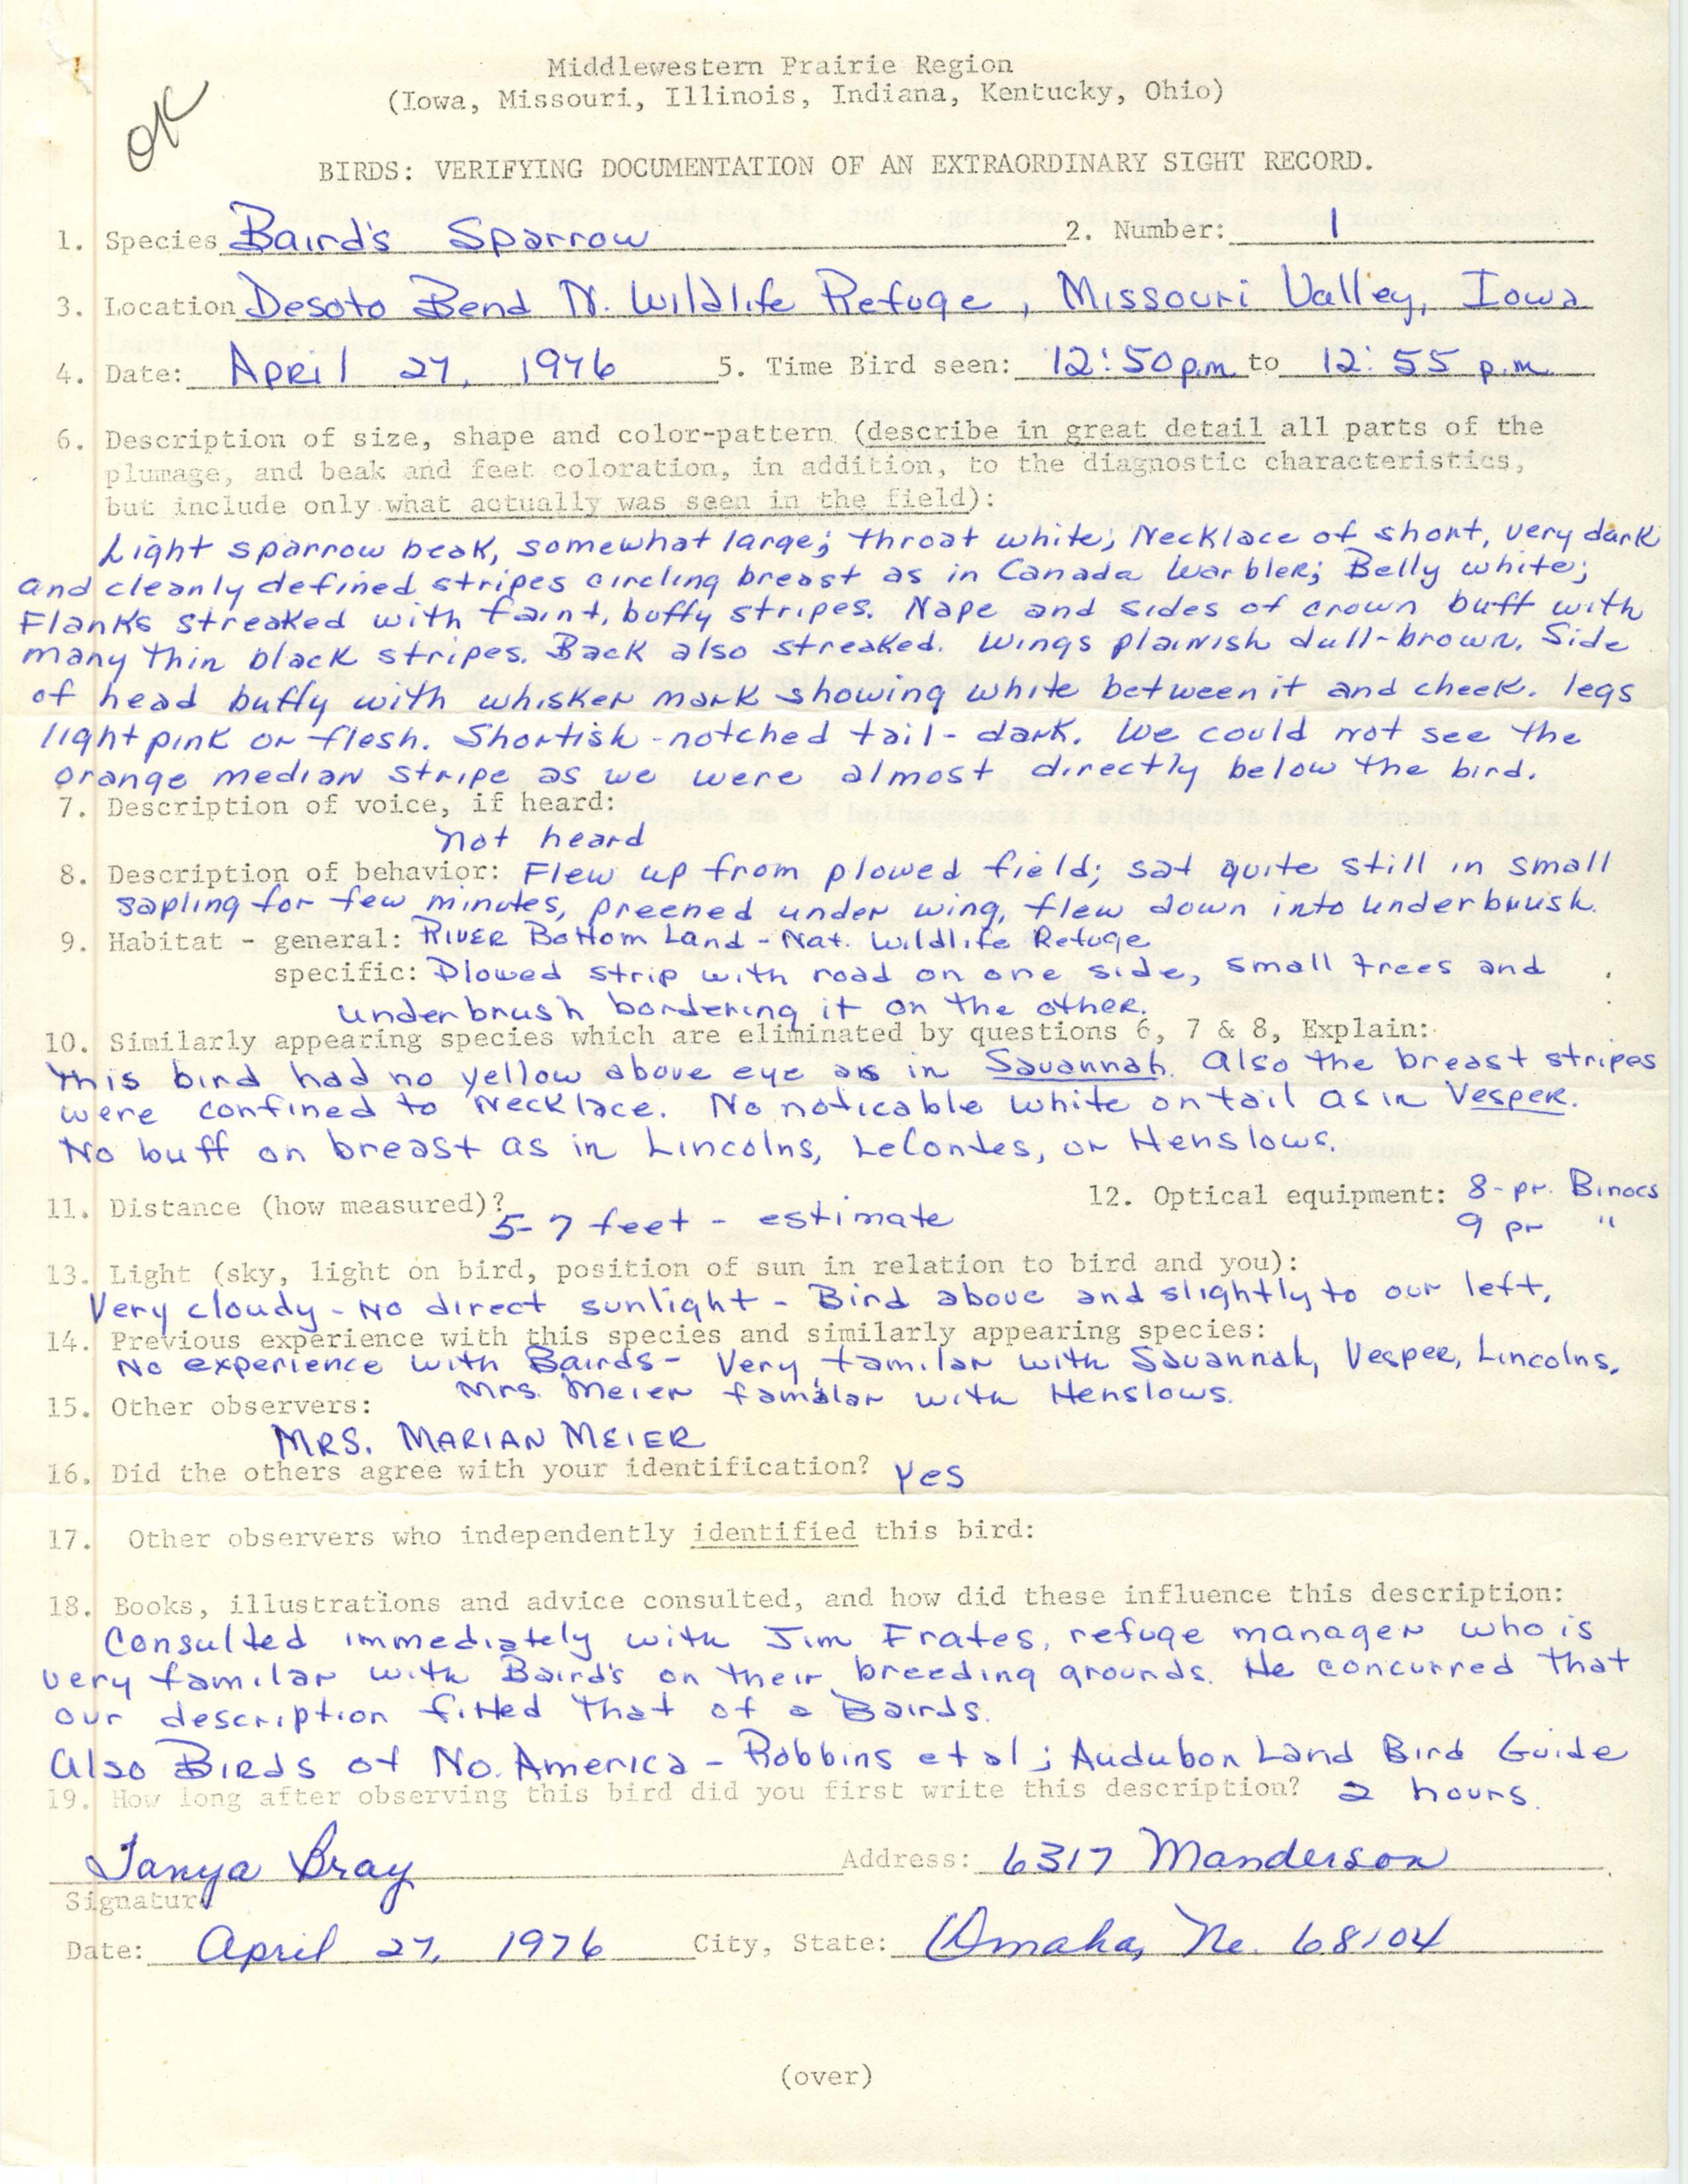 Rare bird documentation form for Baird's Sparrow at DeSoto Bend National Wildlife Refuge, 1976